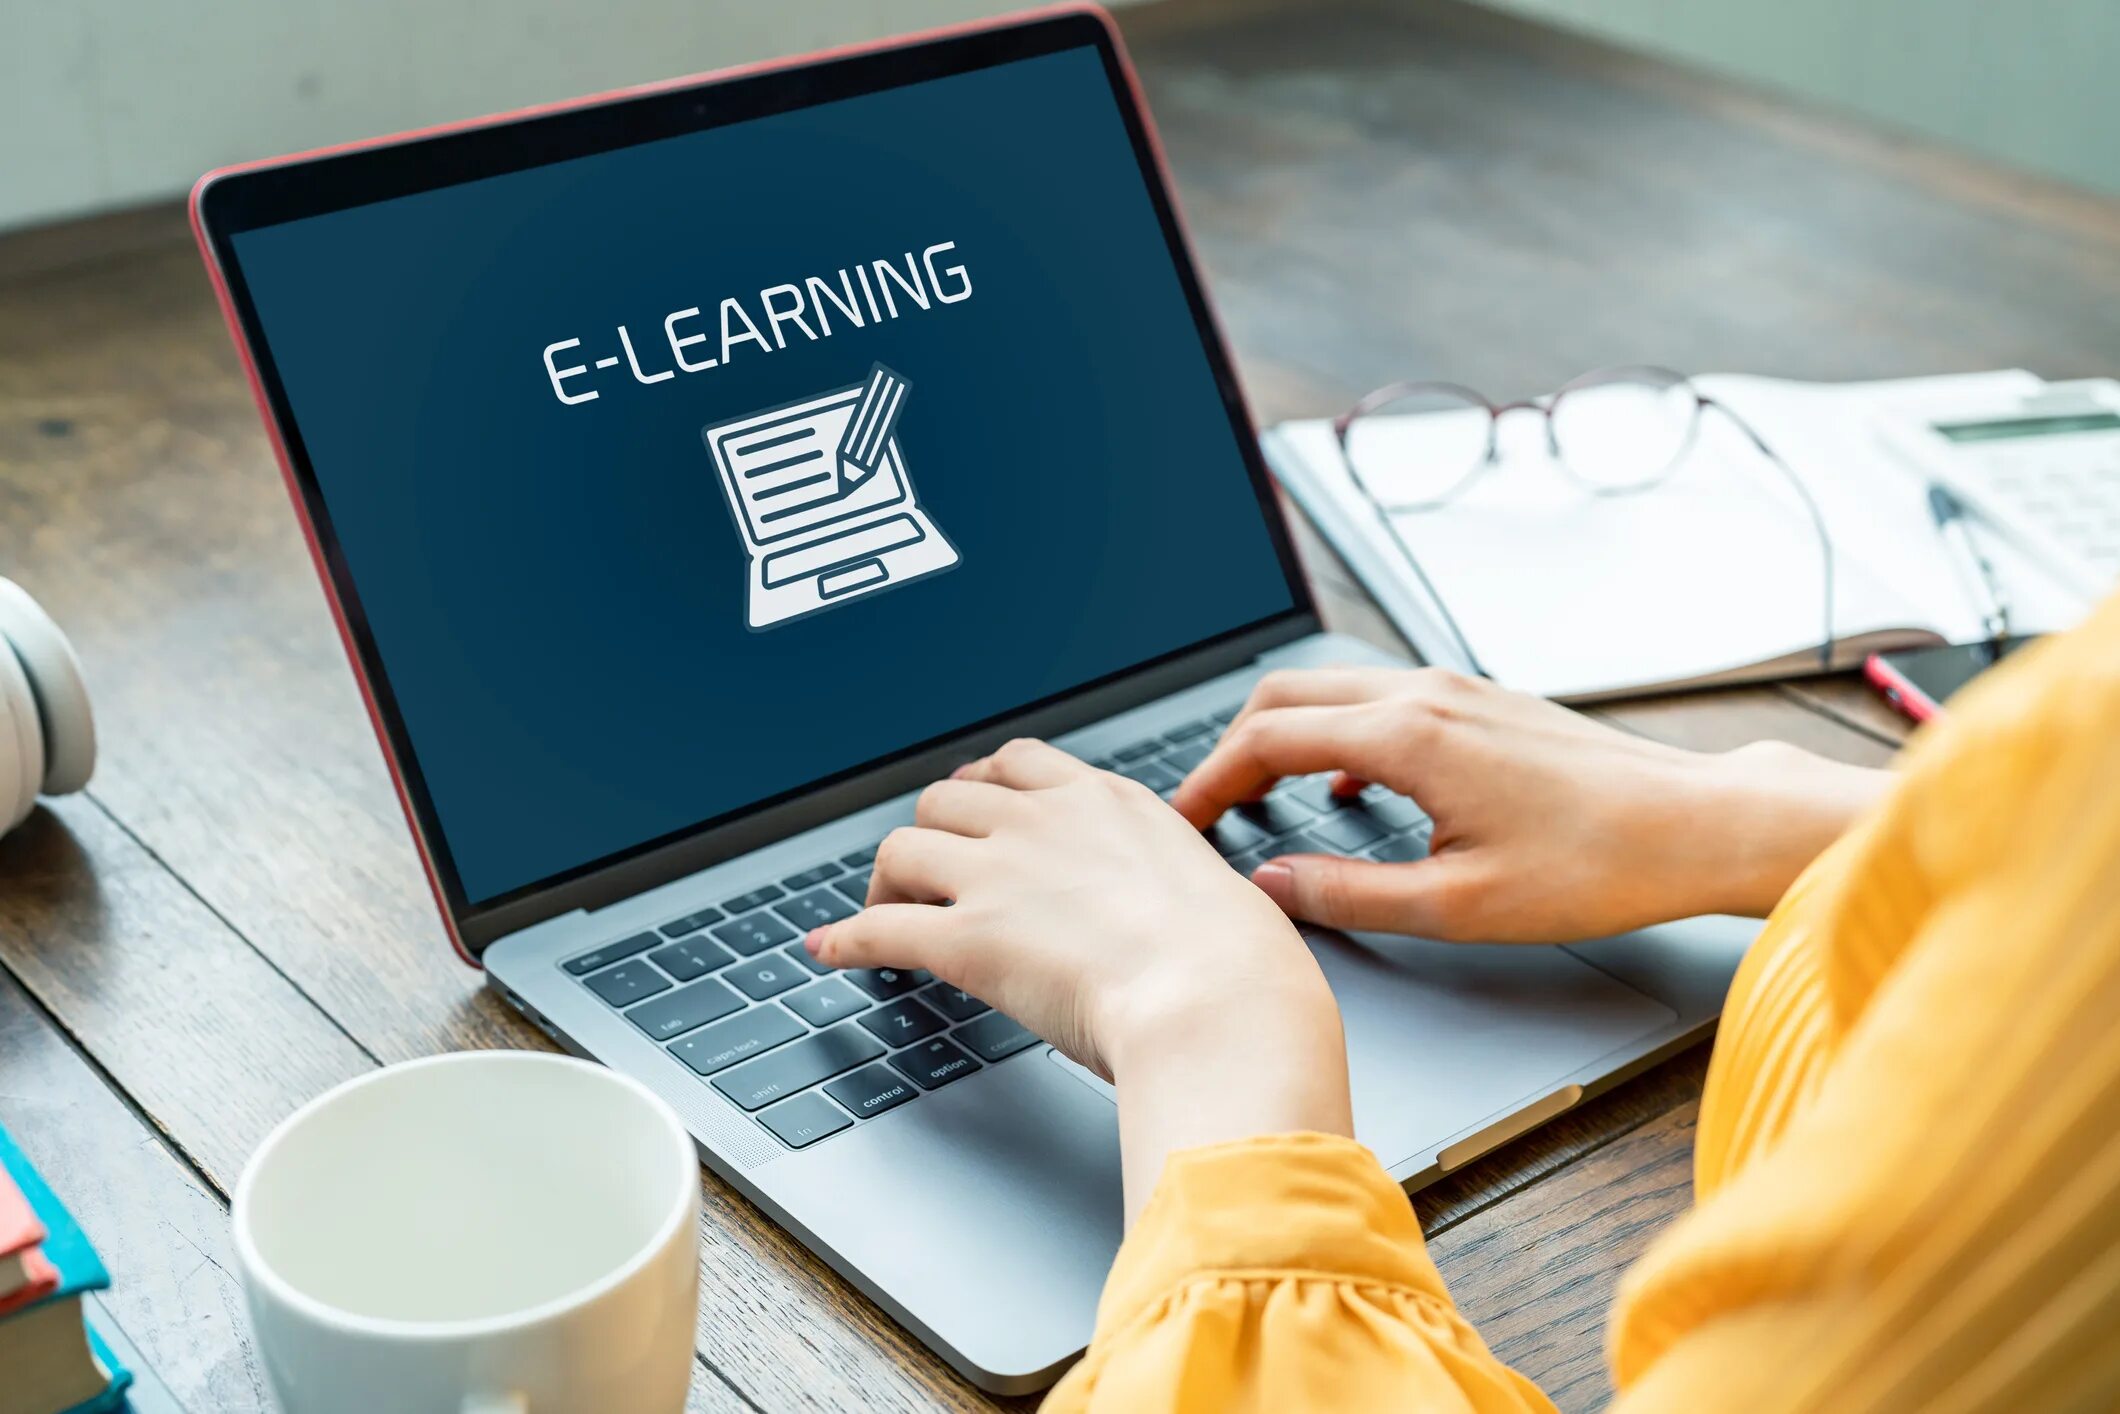 Обучение в интернете картинки. Электронное обучение e-Learning. Интернет образование. Content en us